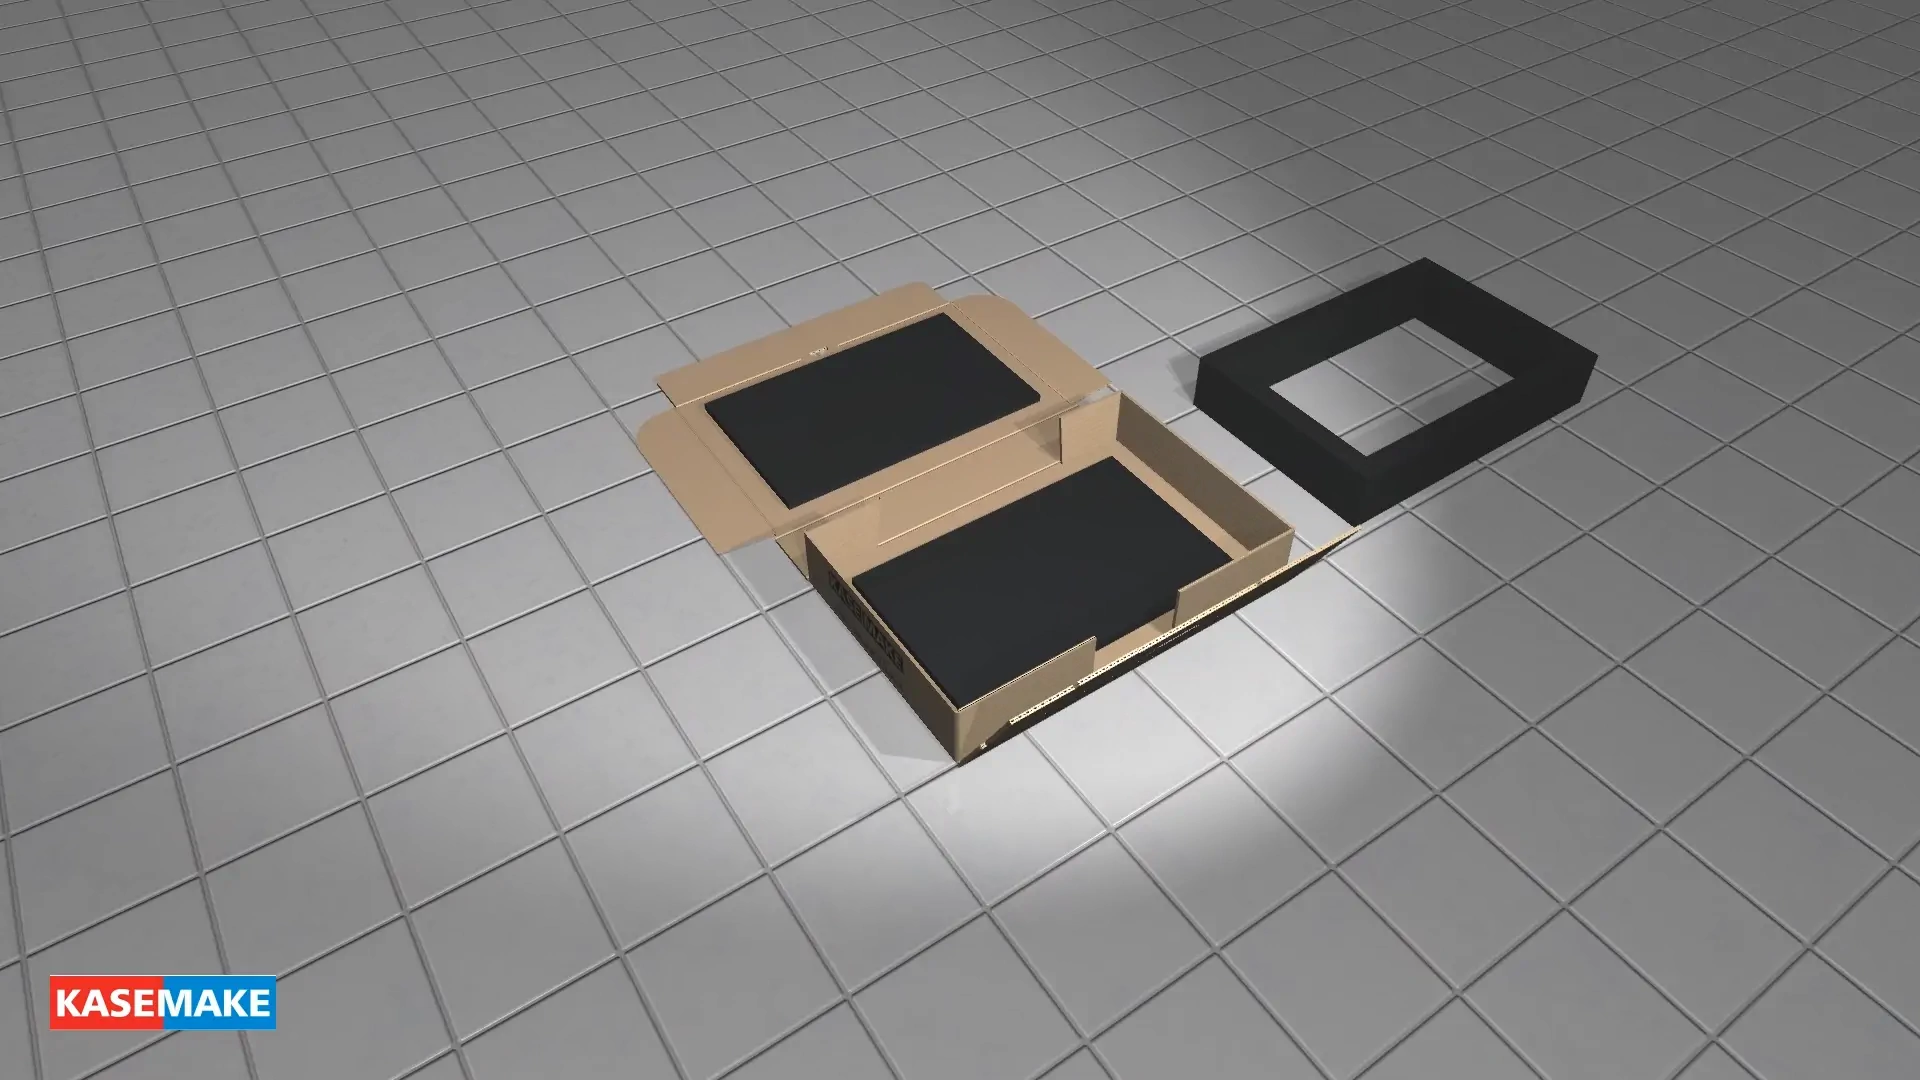 FEFCO 0426 बॉक्स को यथार्थवादी 3D में मोड़ते हुए देखें